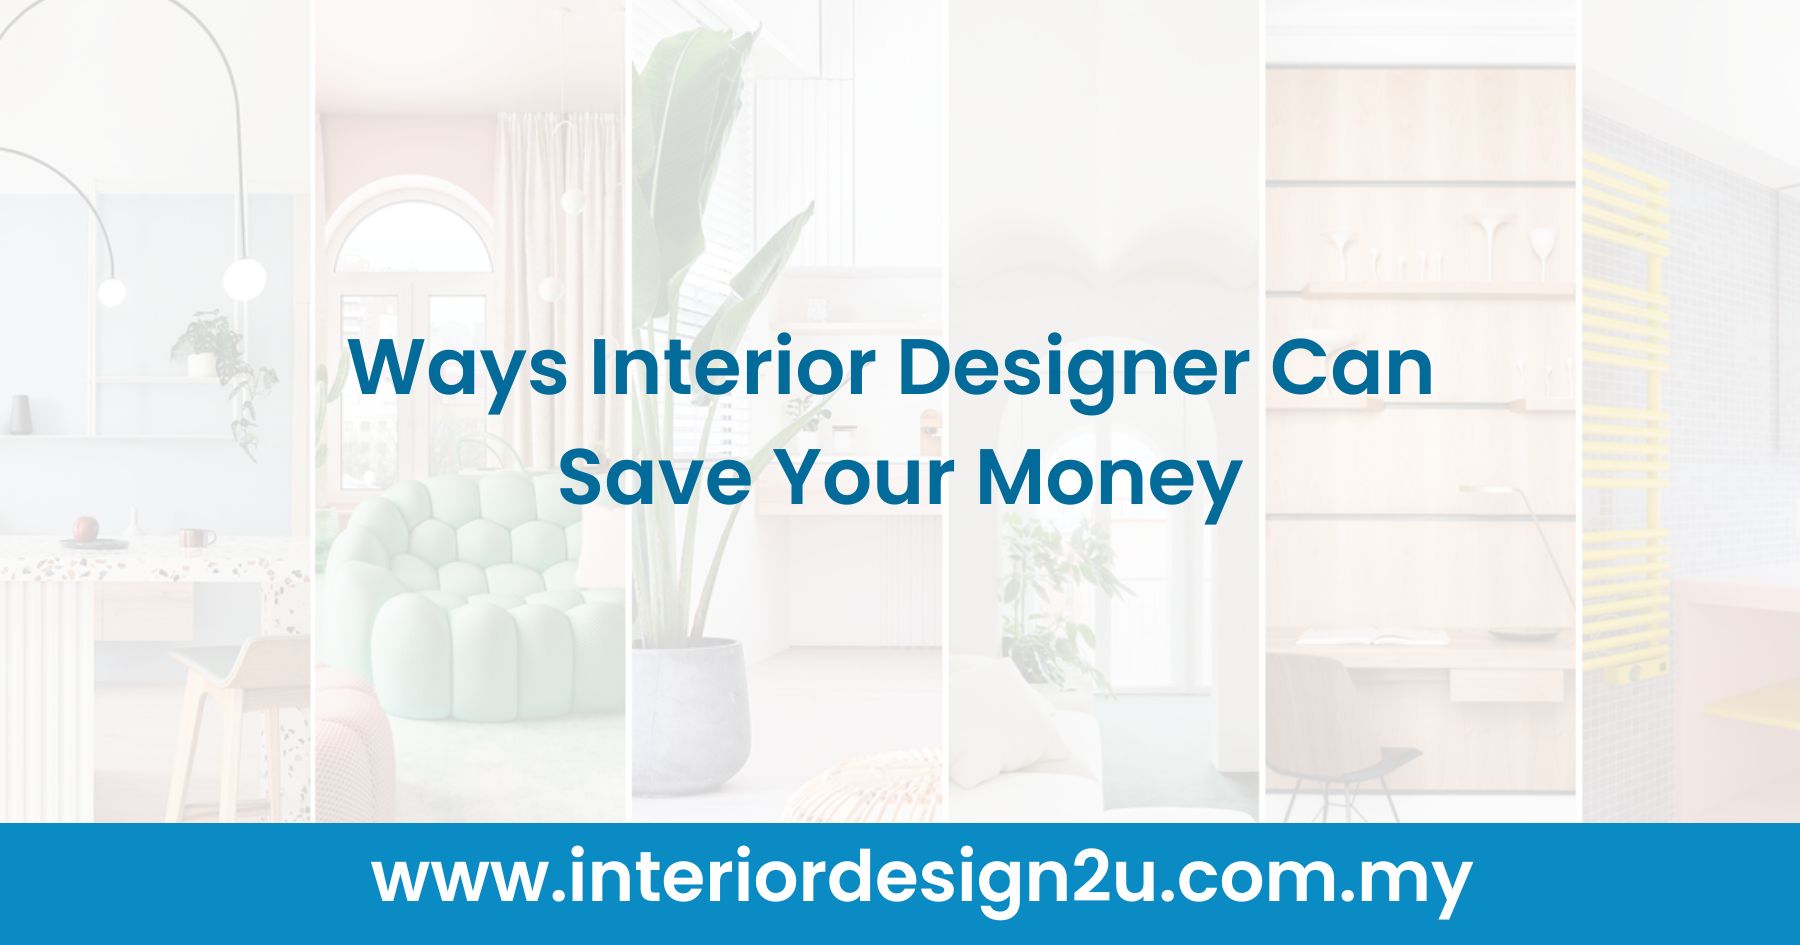 Ways Interior Designer Can Save Your Money